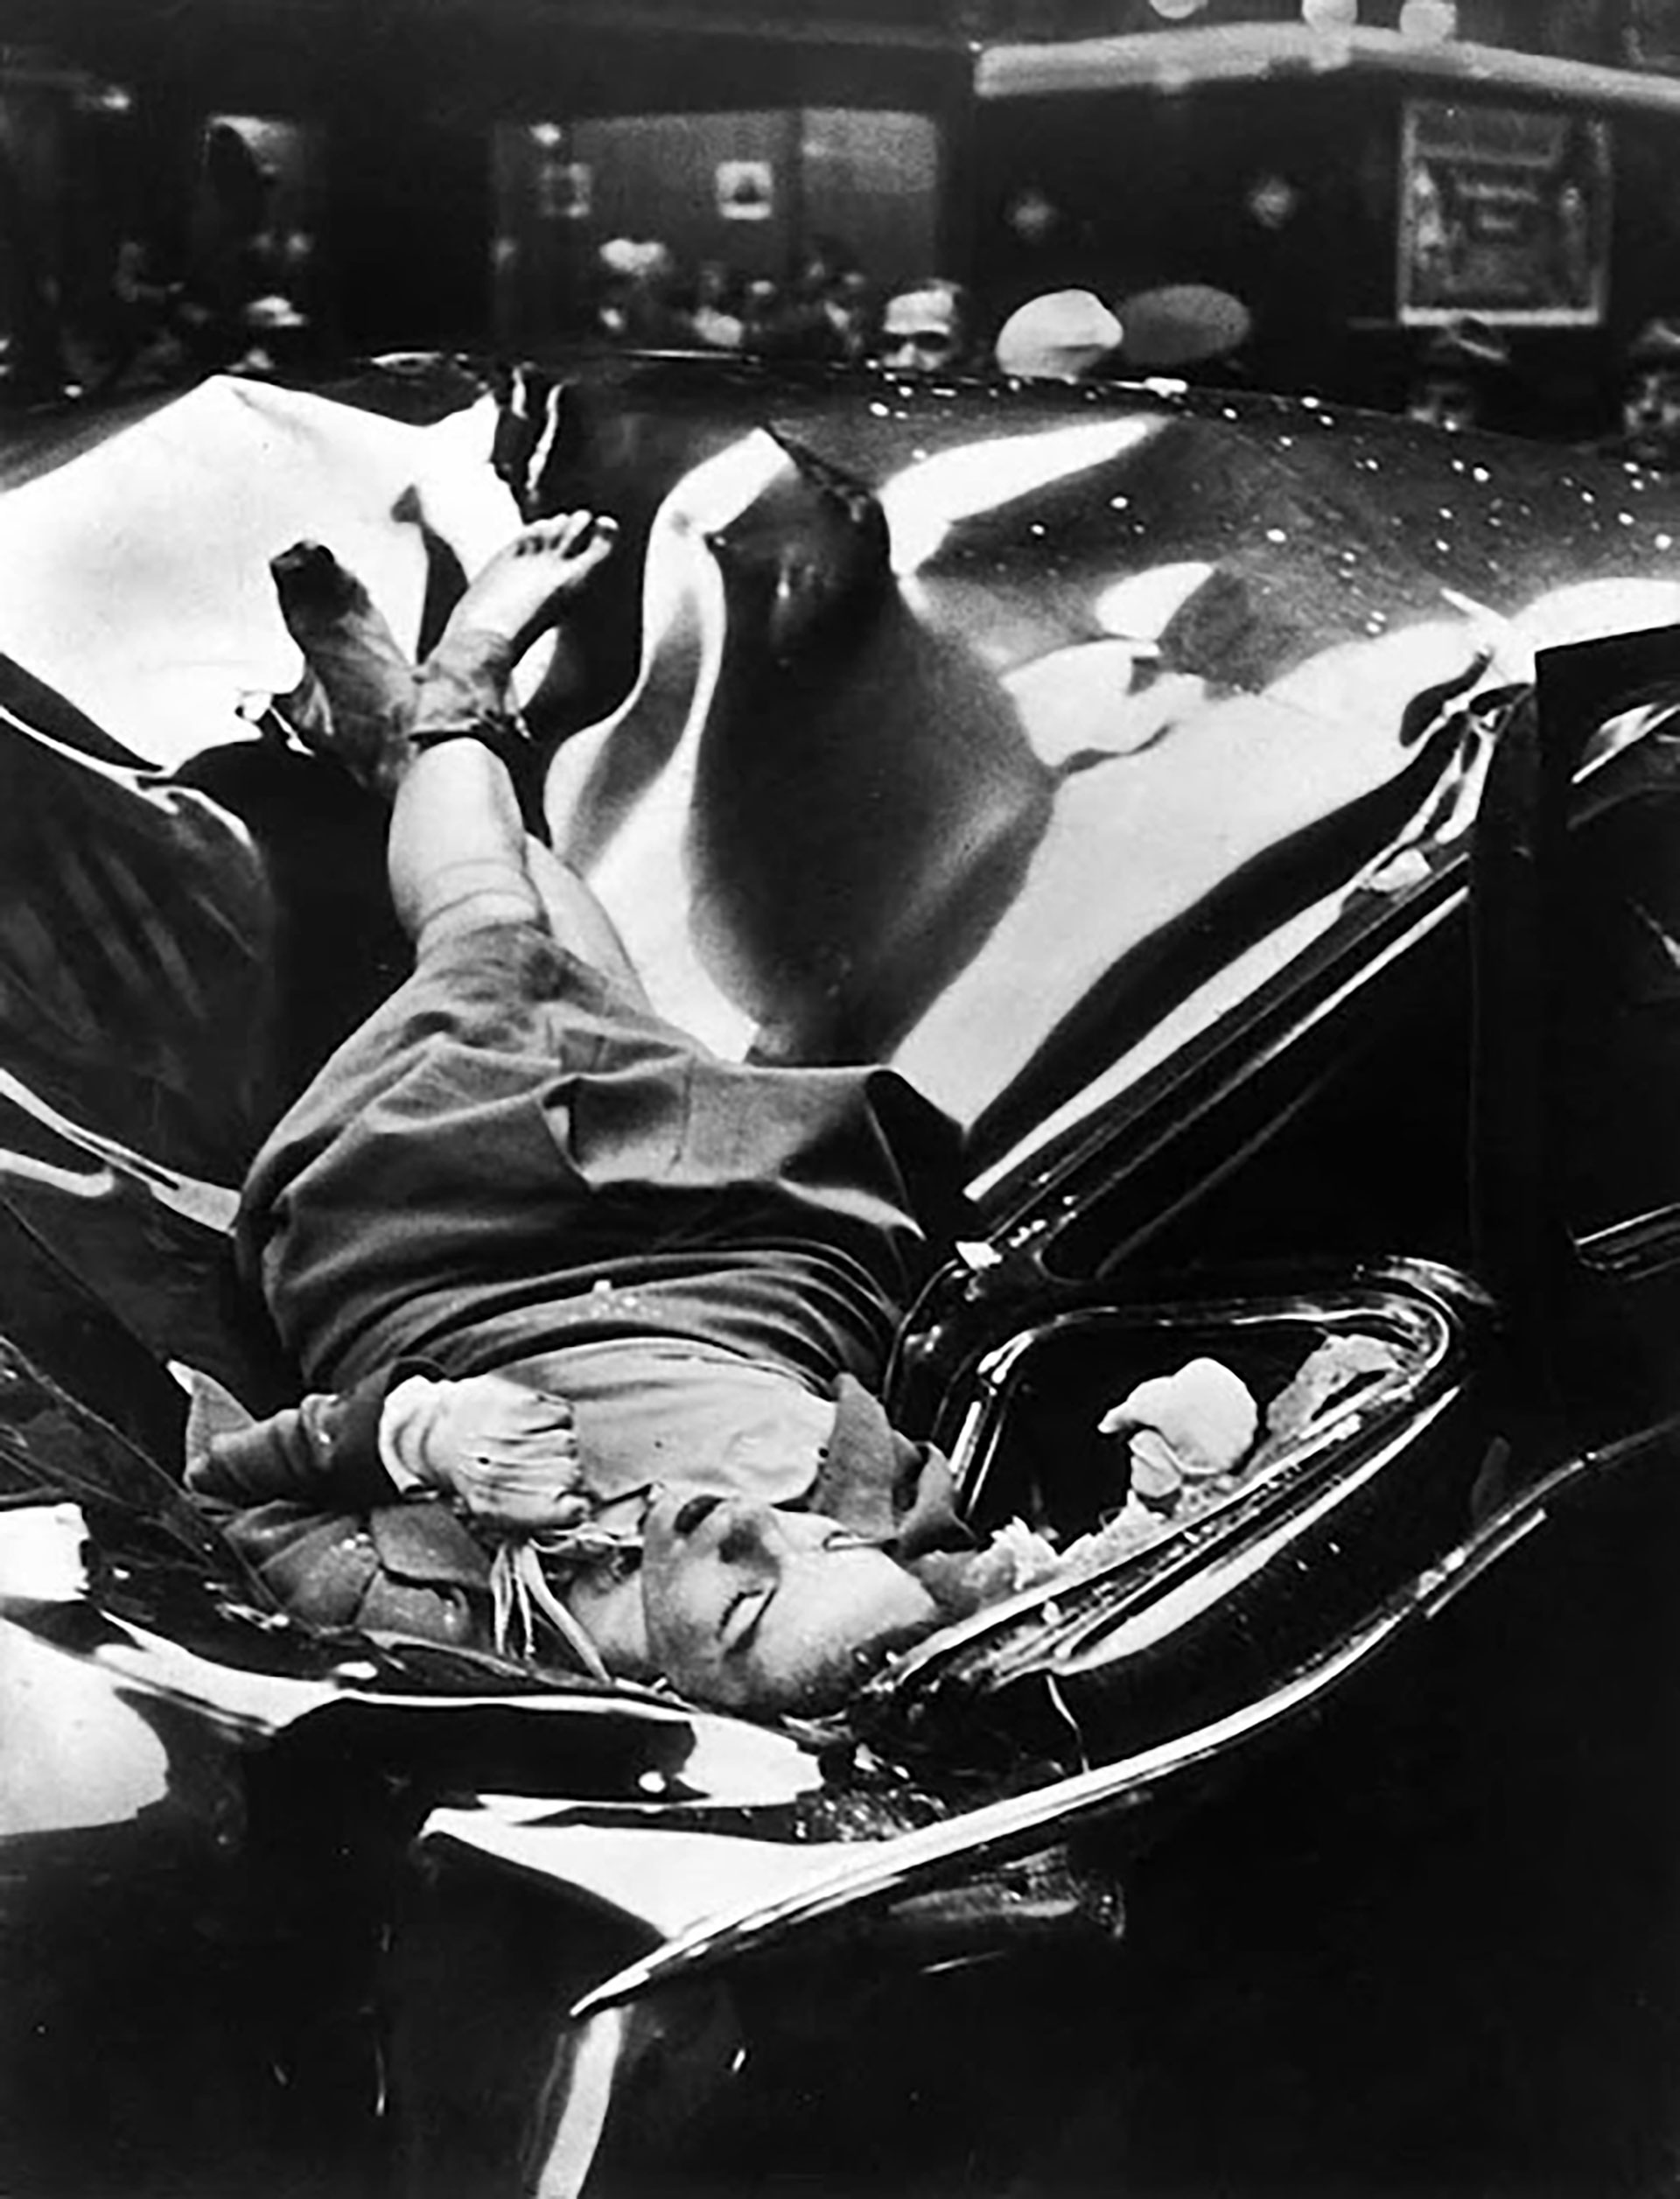 El estudiante de fotografía Robert C. Wiles capturó la caída de Evelyn McHale sobre el capot de un auto. La imagen fue publicada el el 12 de mayo de 1947 en la tapa de la revista Life con el título “El suicidio más hermoso”